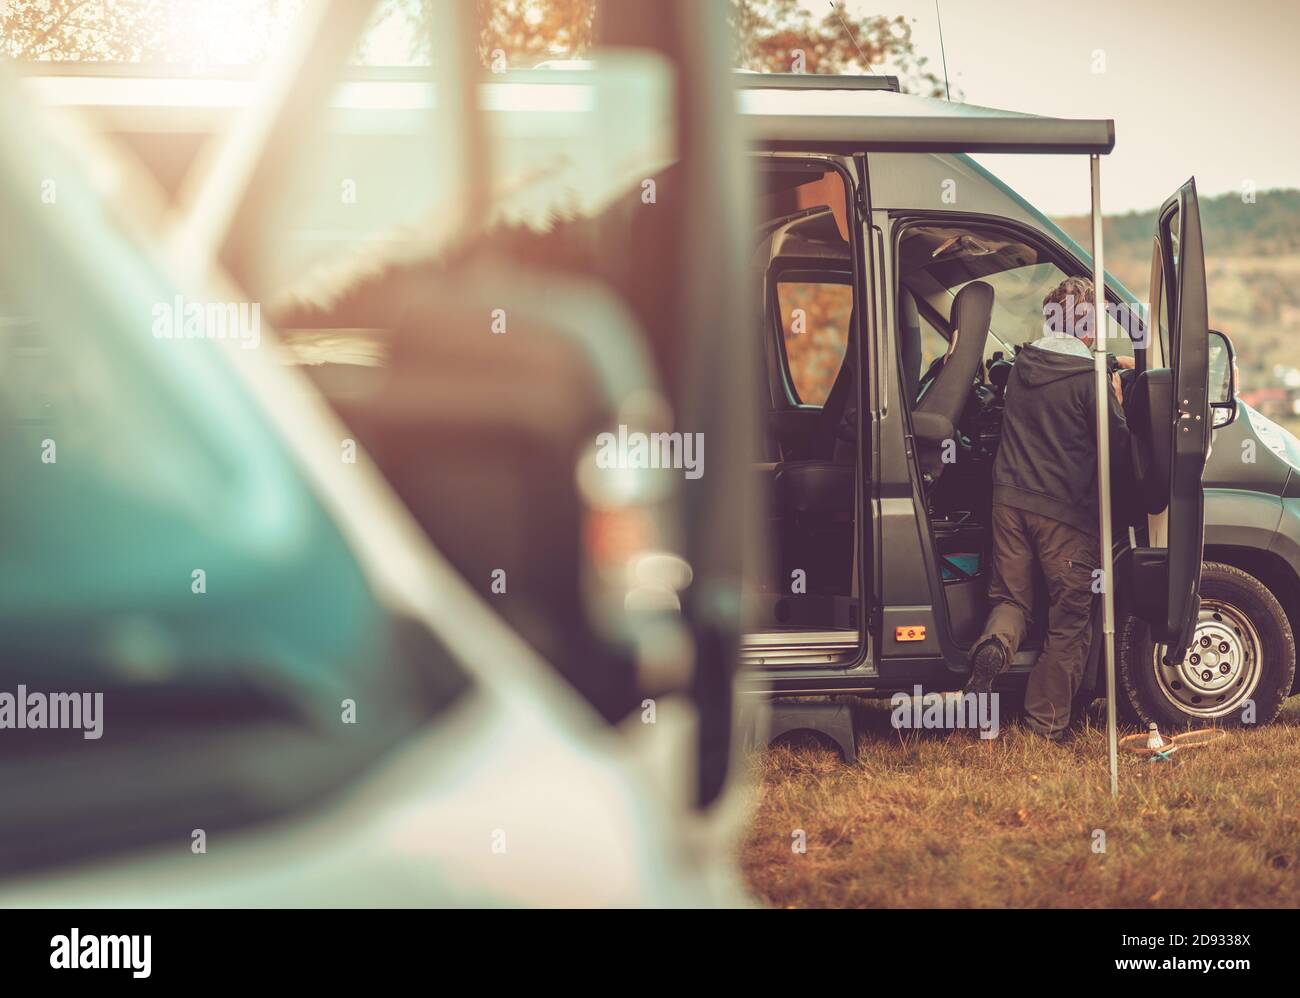 Tema van Life. Camper Vans vehículos recreativos RV Camping. Hombres caucásicos preparando su autocaravana. Foto de stock